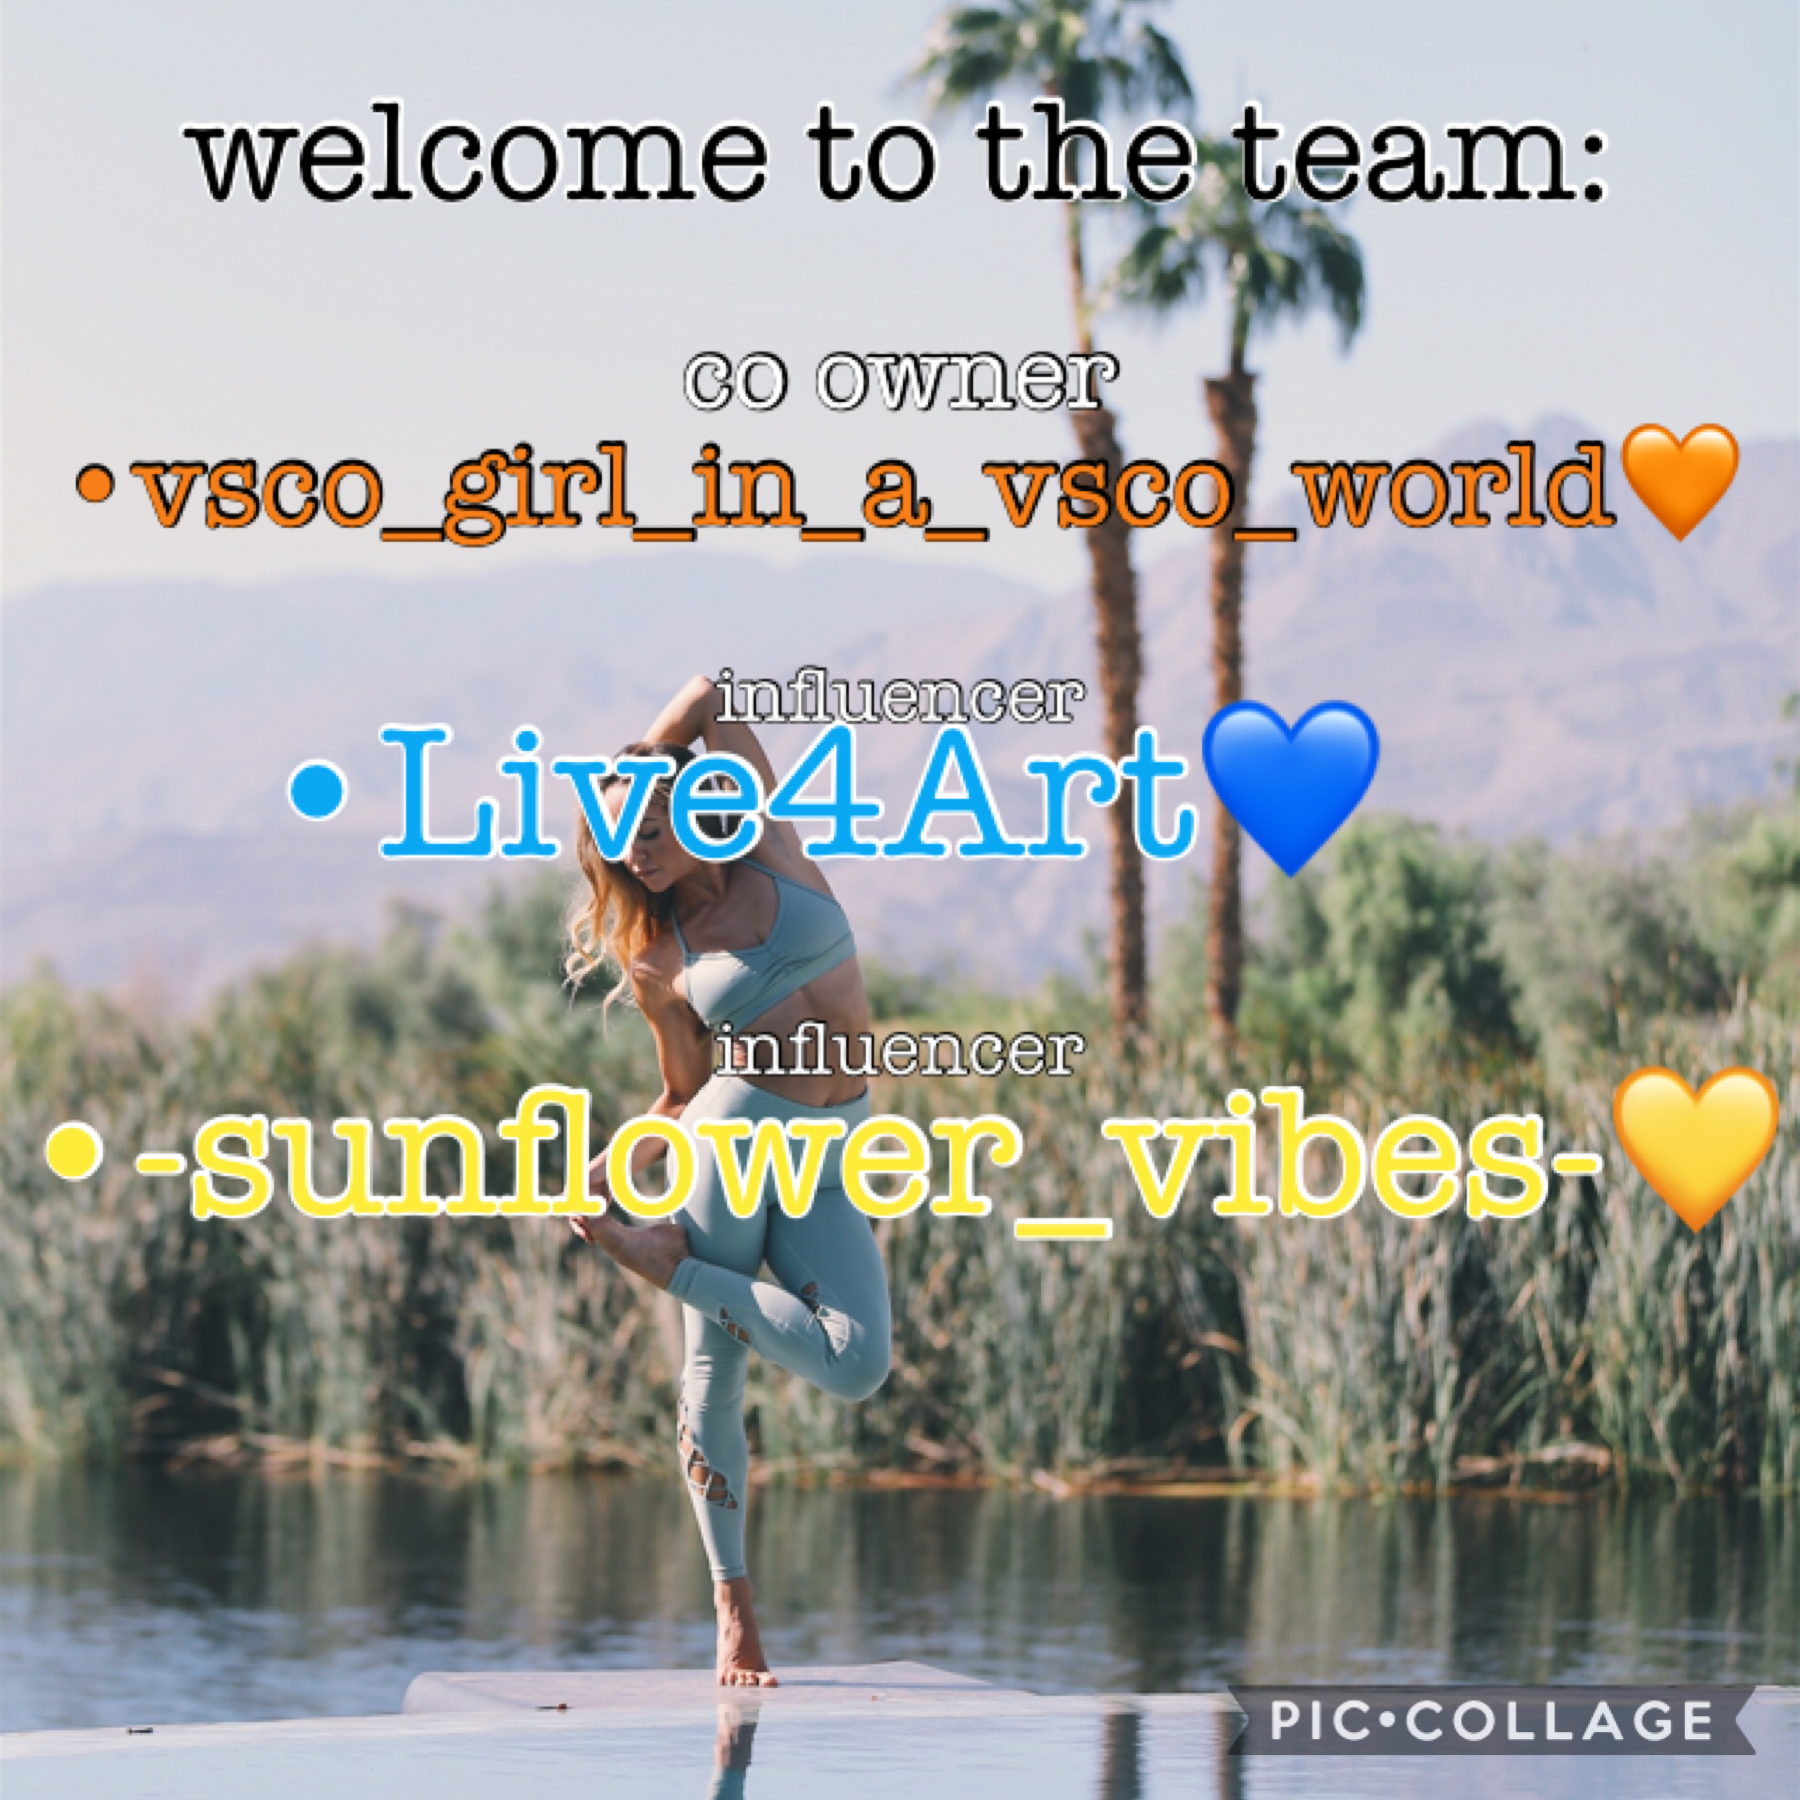 vsco_girl_in_a_vsco_world (co owner)

Live4Art (influencer)

-sunflower_vibes- (influencer)